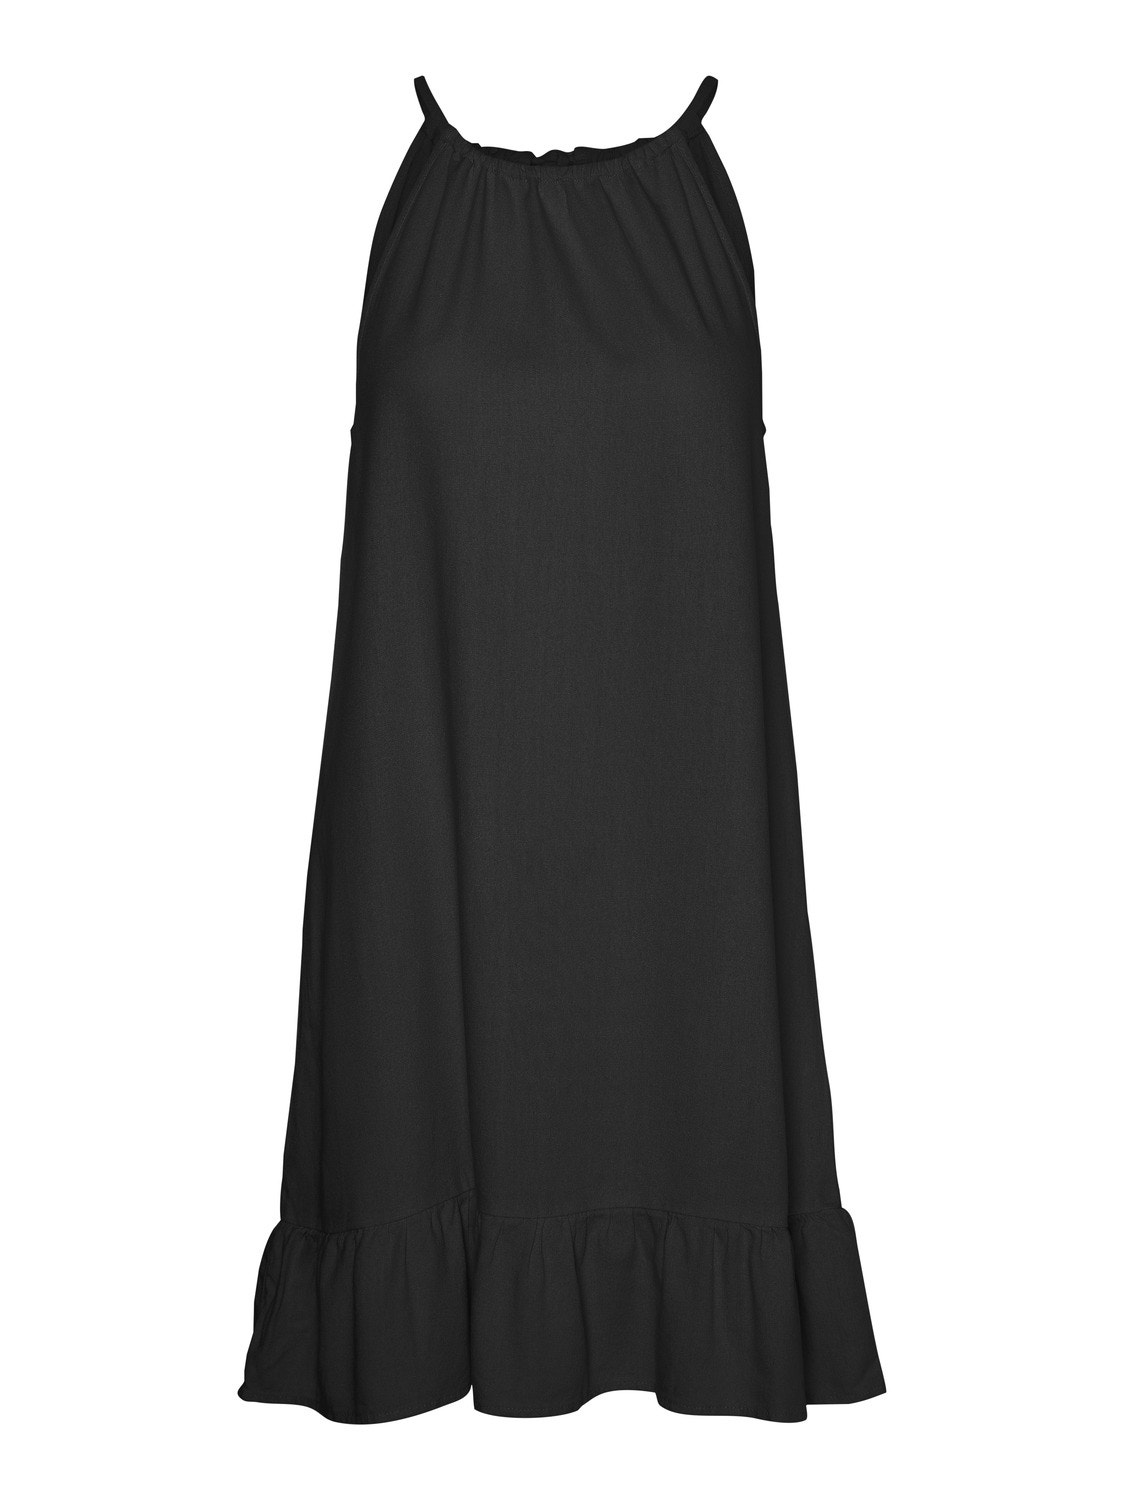 Vero Moda VMMYMILO Short dress -Black - 10303634